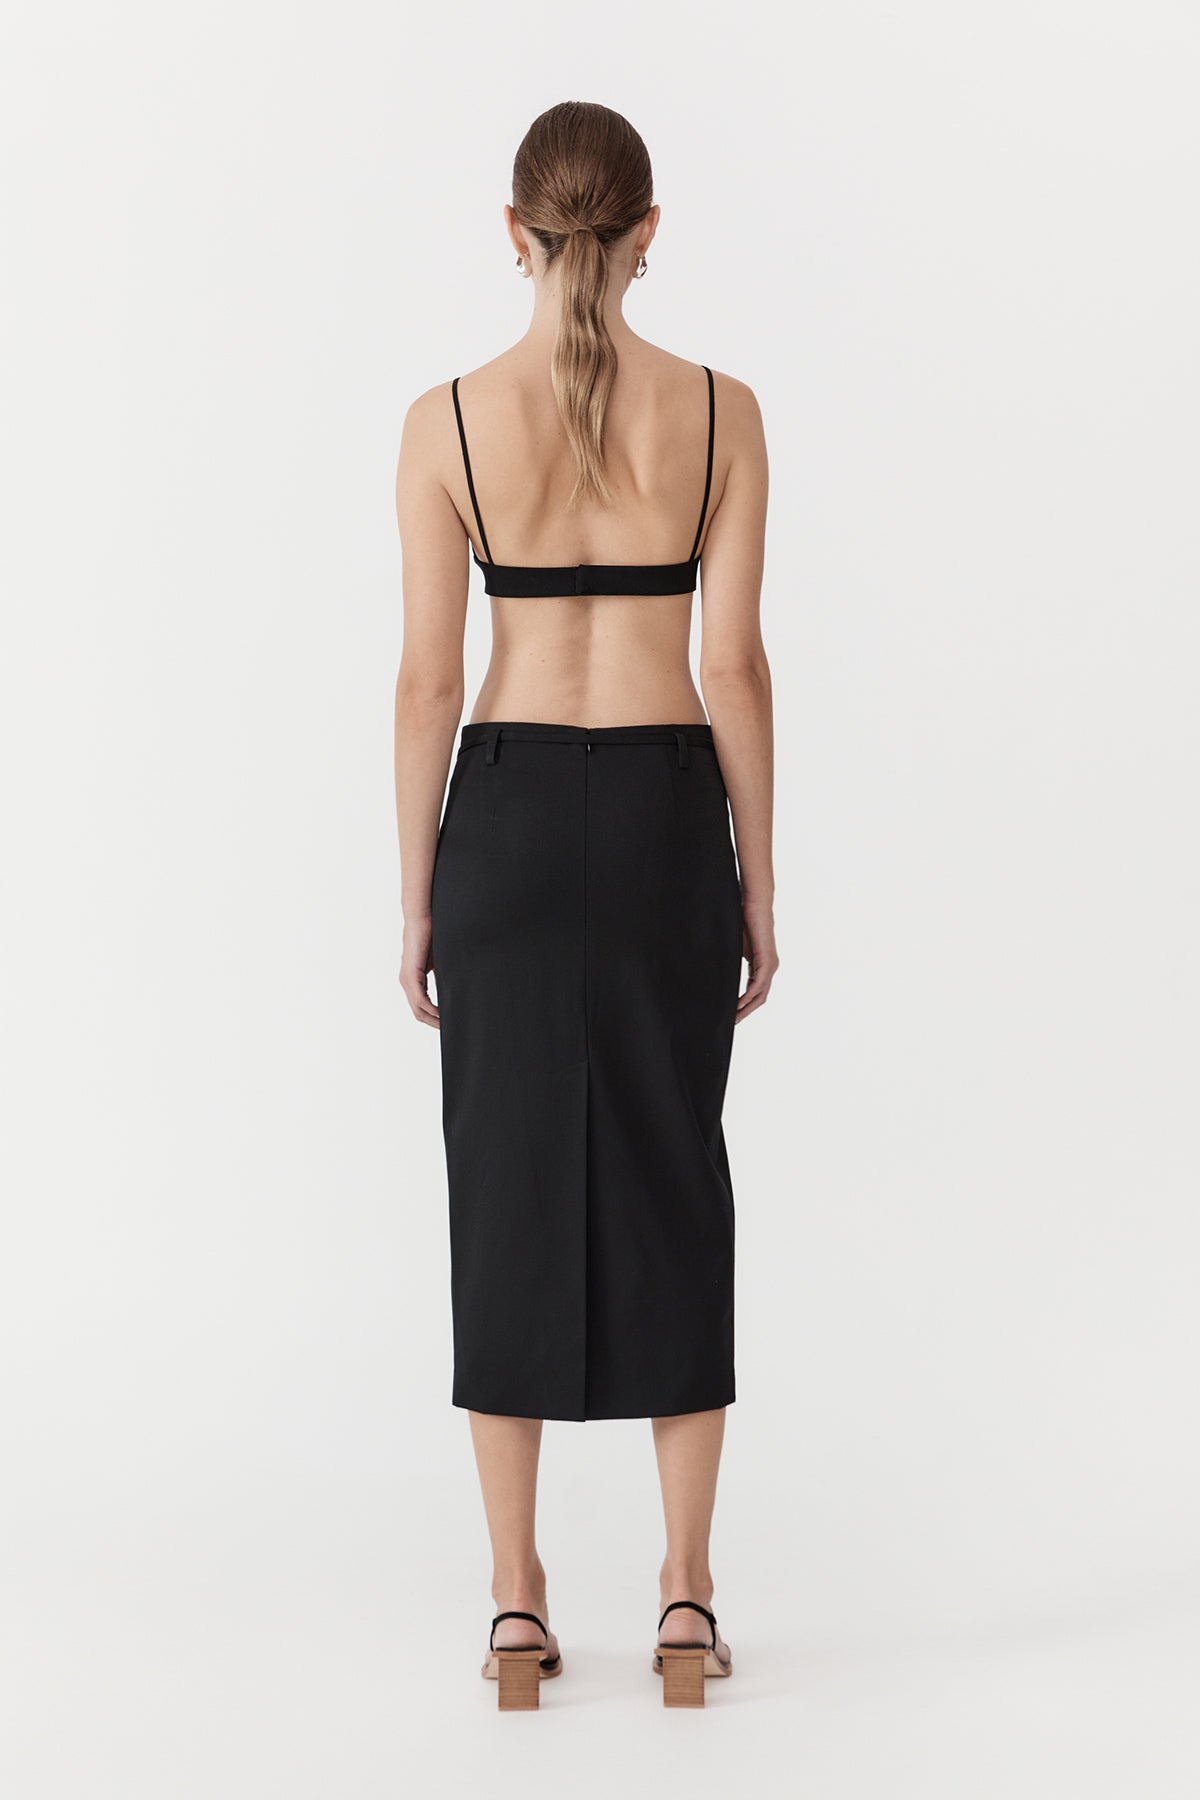 Belted Pencil Skirt - Black